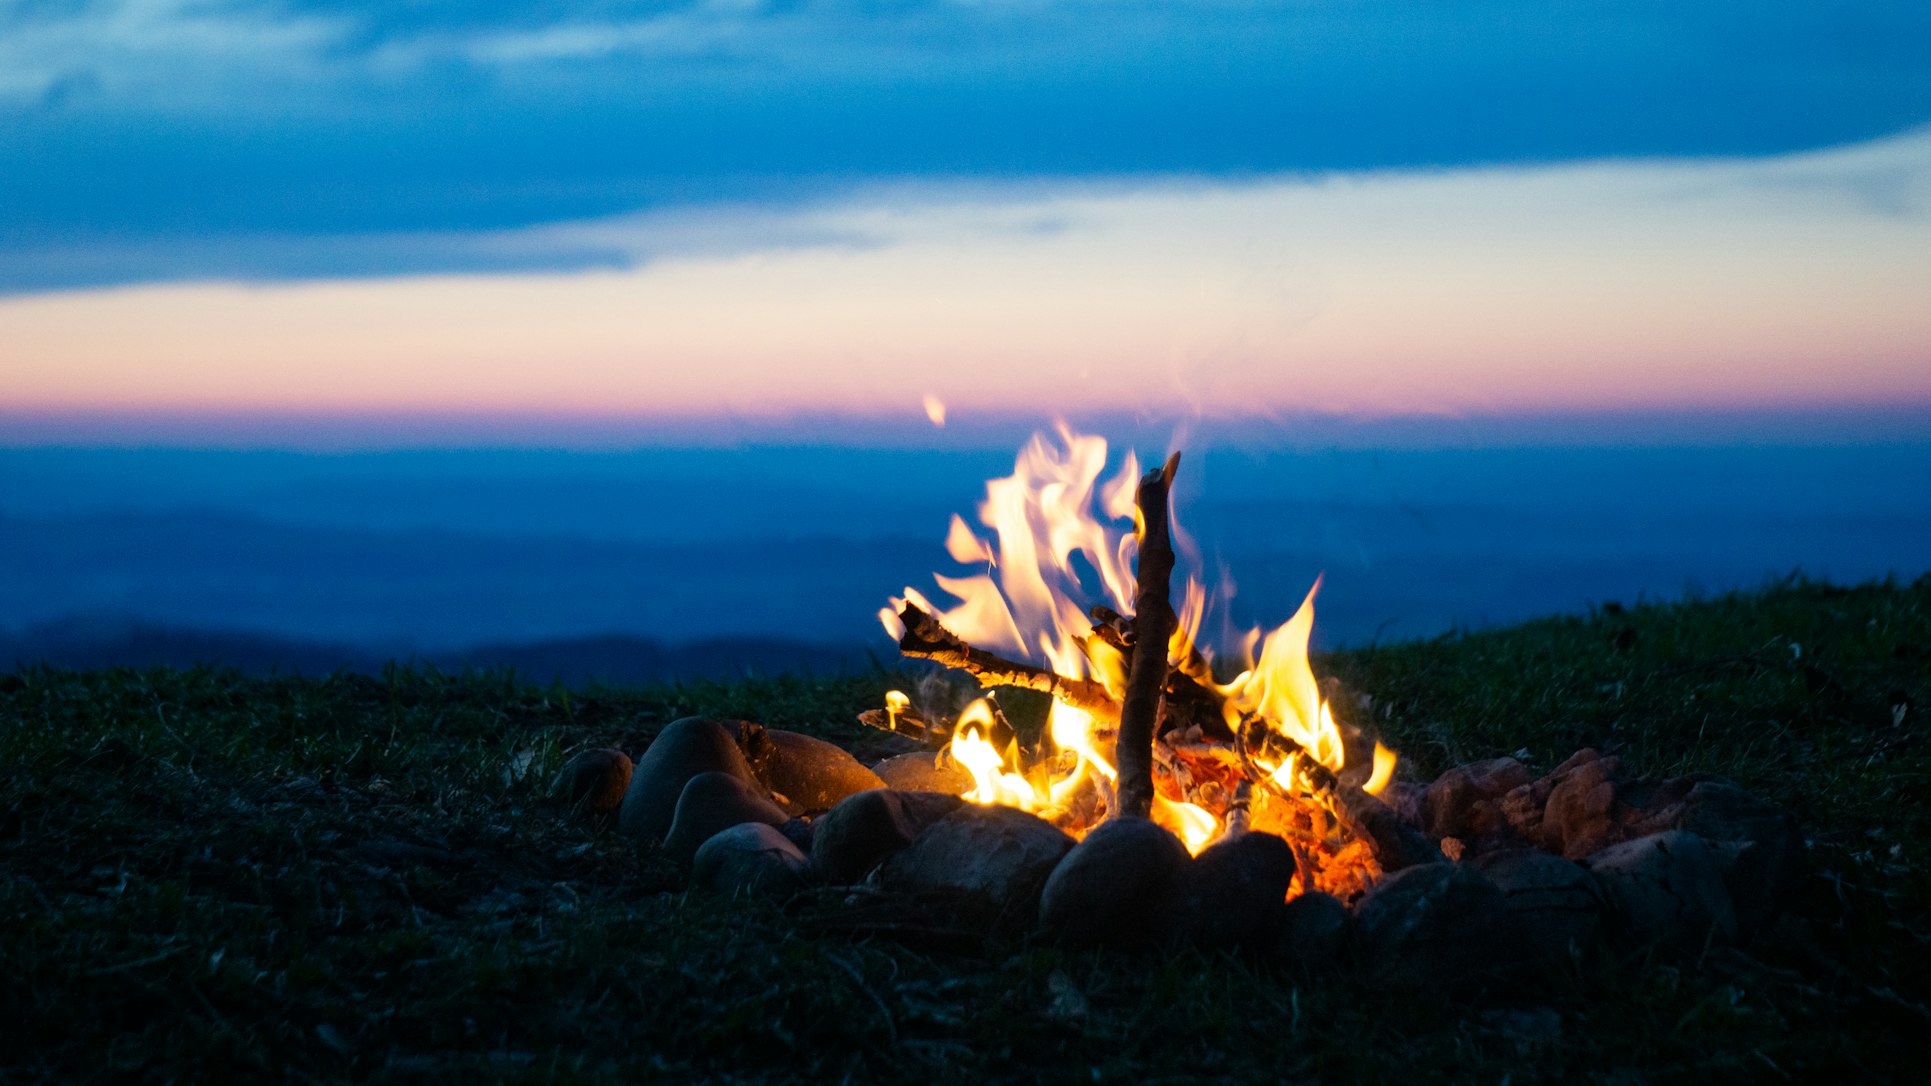 Campfire - Timon Wanner - Unsplash